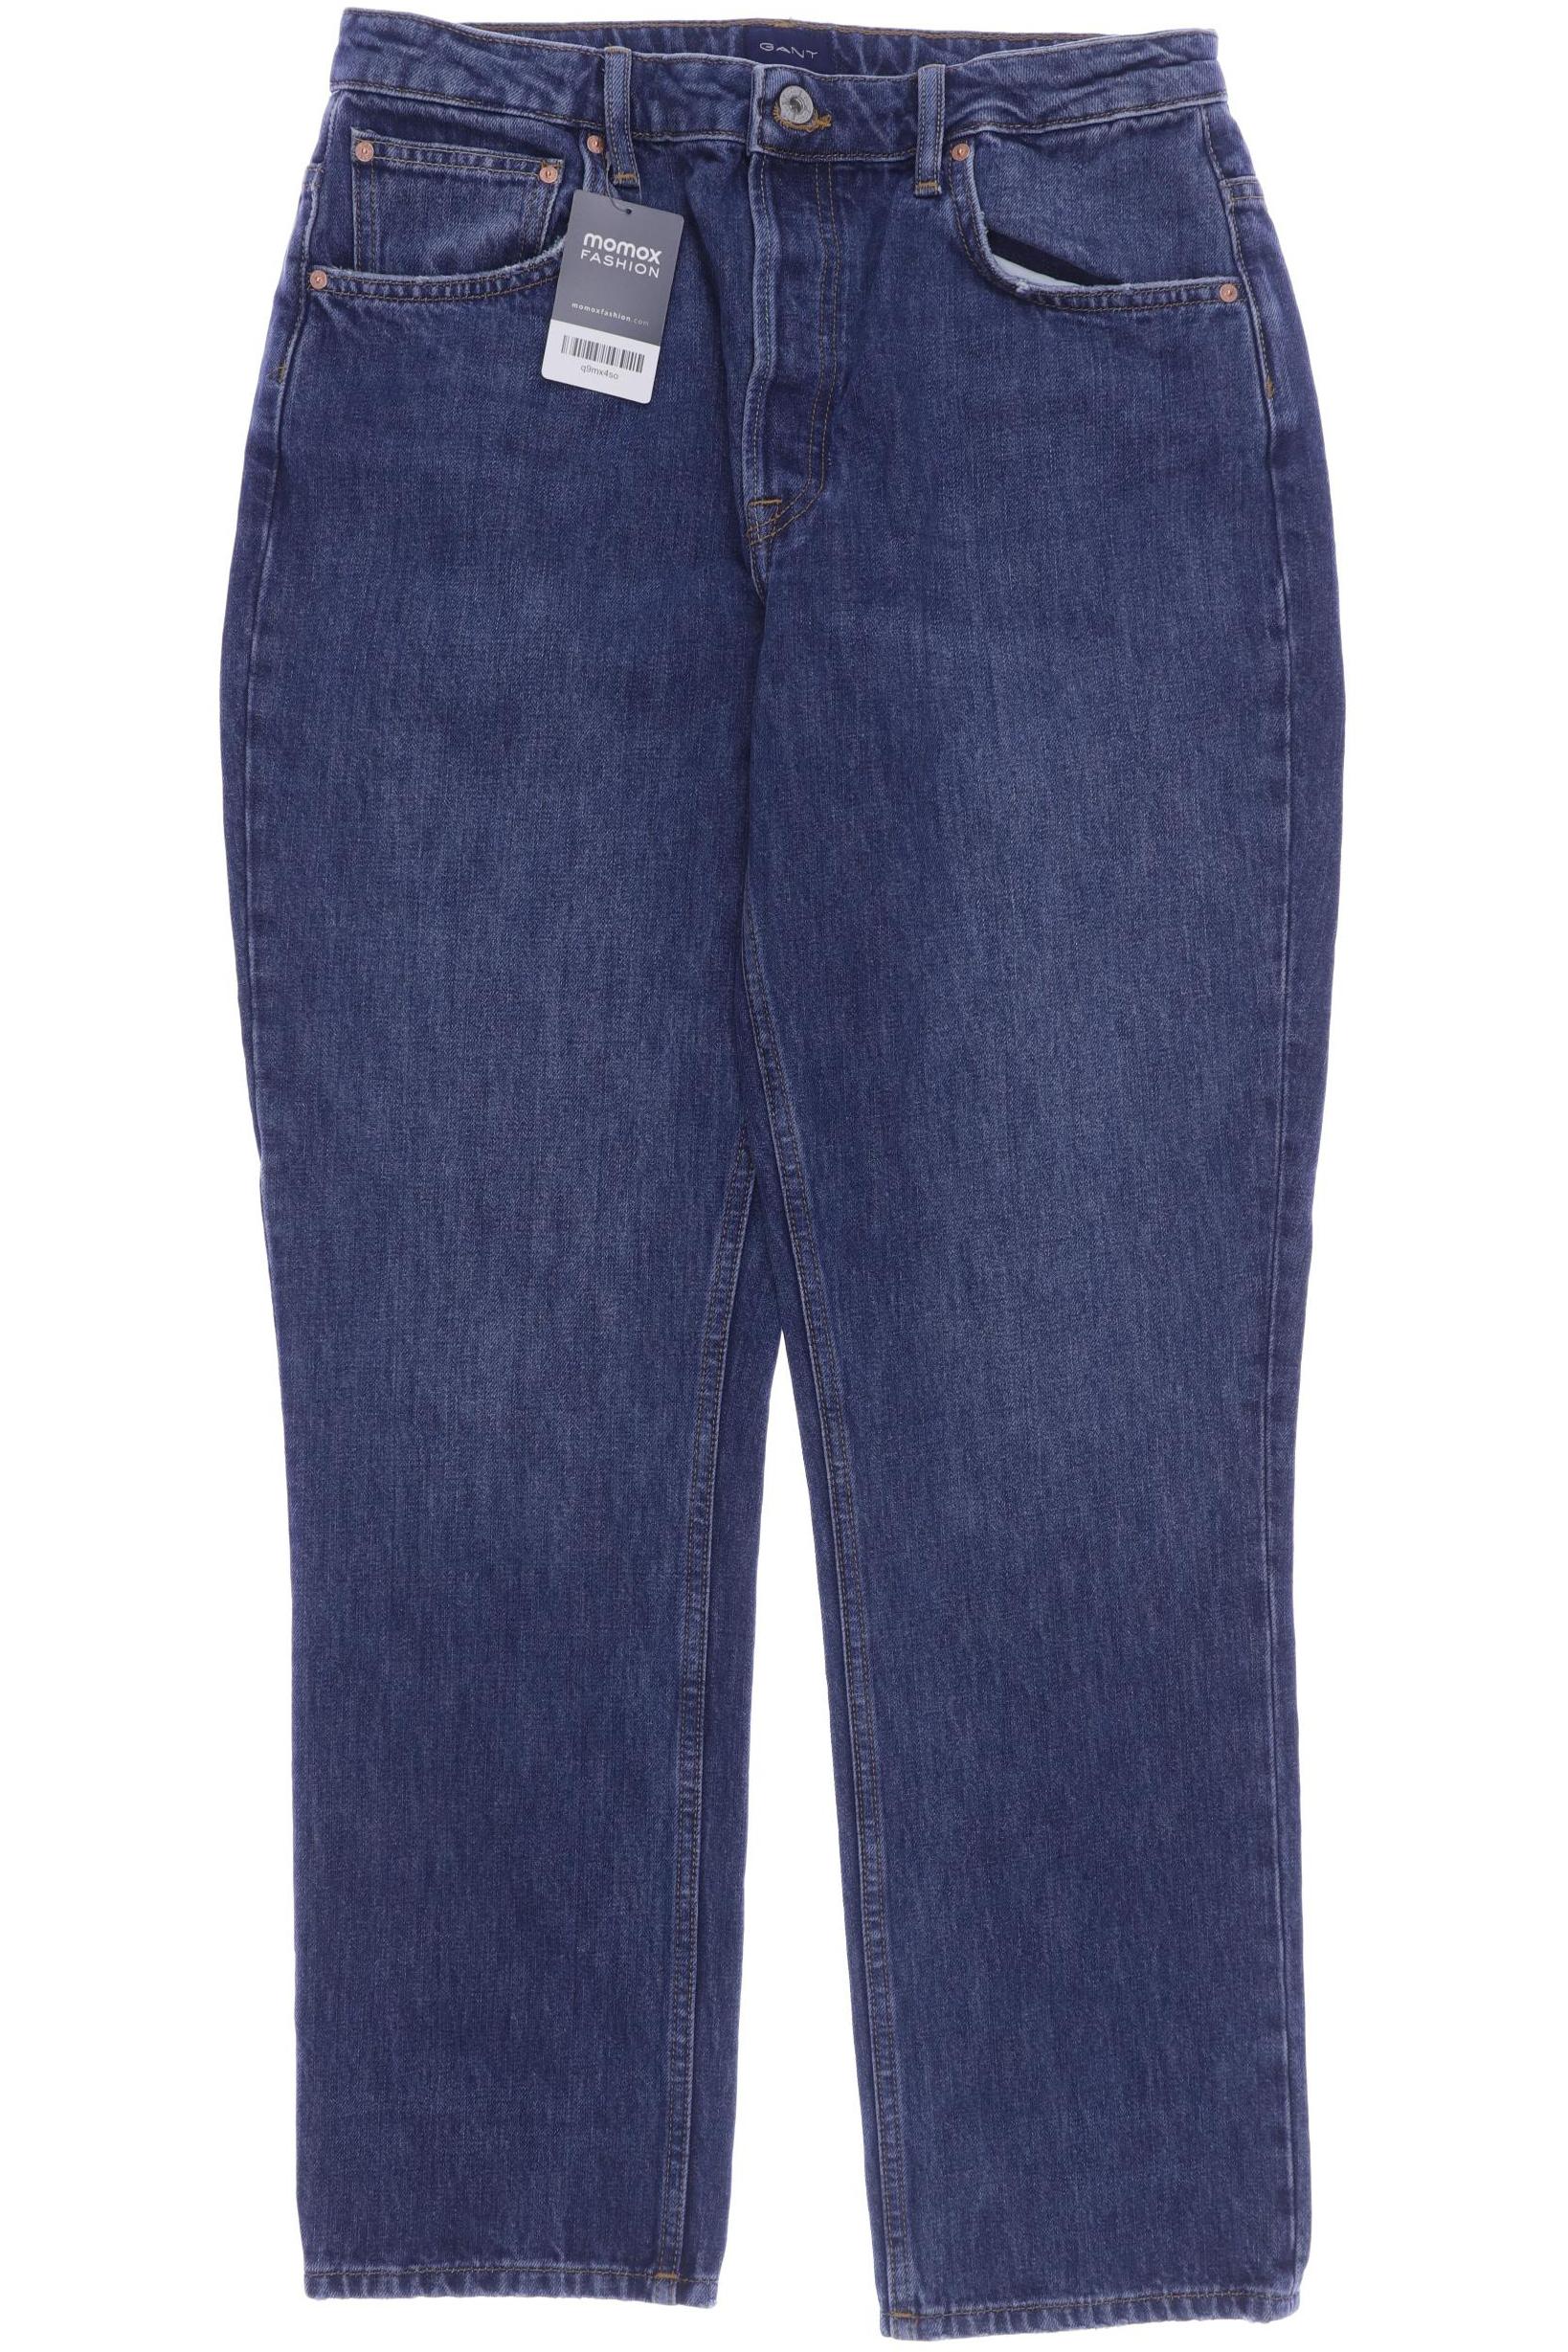 GANT Herren Jeans, blau von Gant